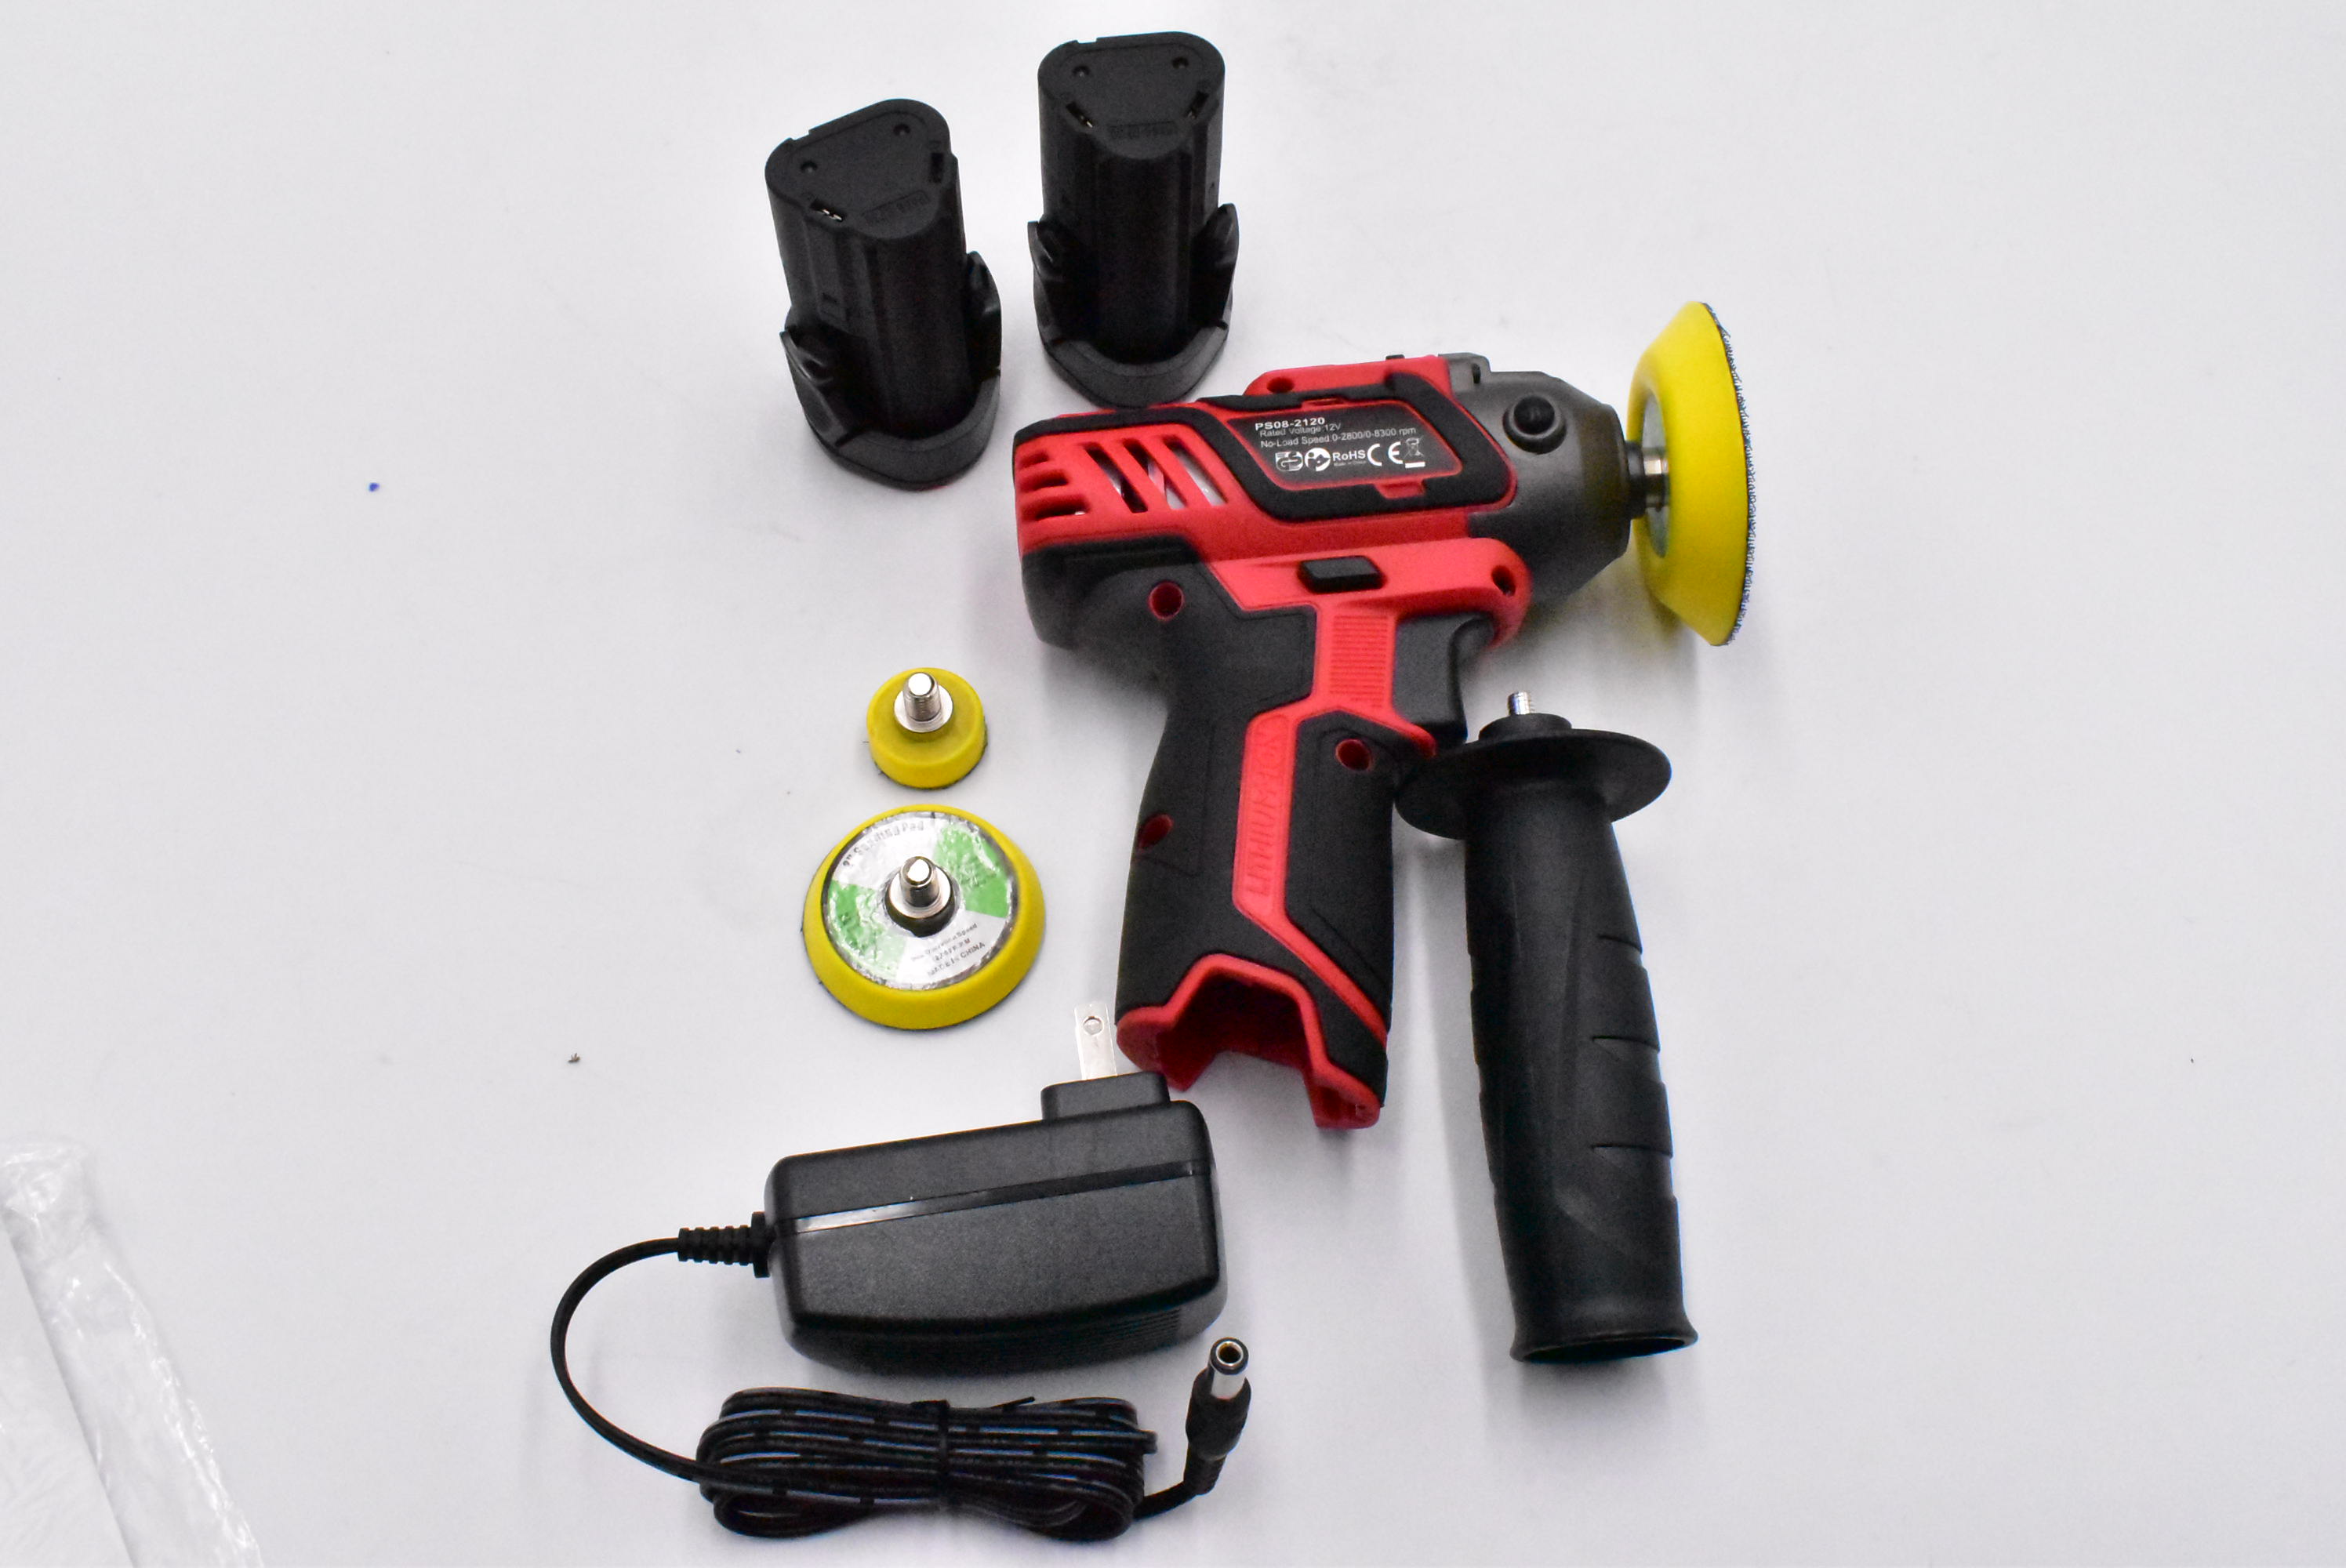 Black/Red SPTA 12V Cordless Car Polisher Tool Sets ‎PS081120 for sale online 